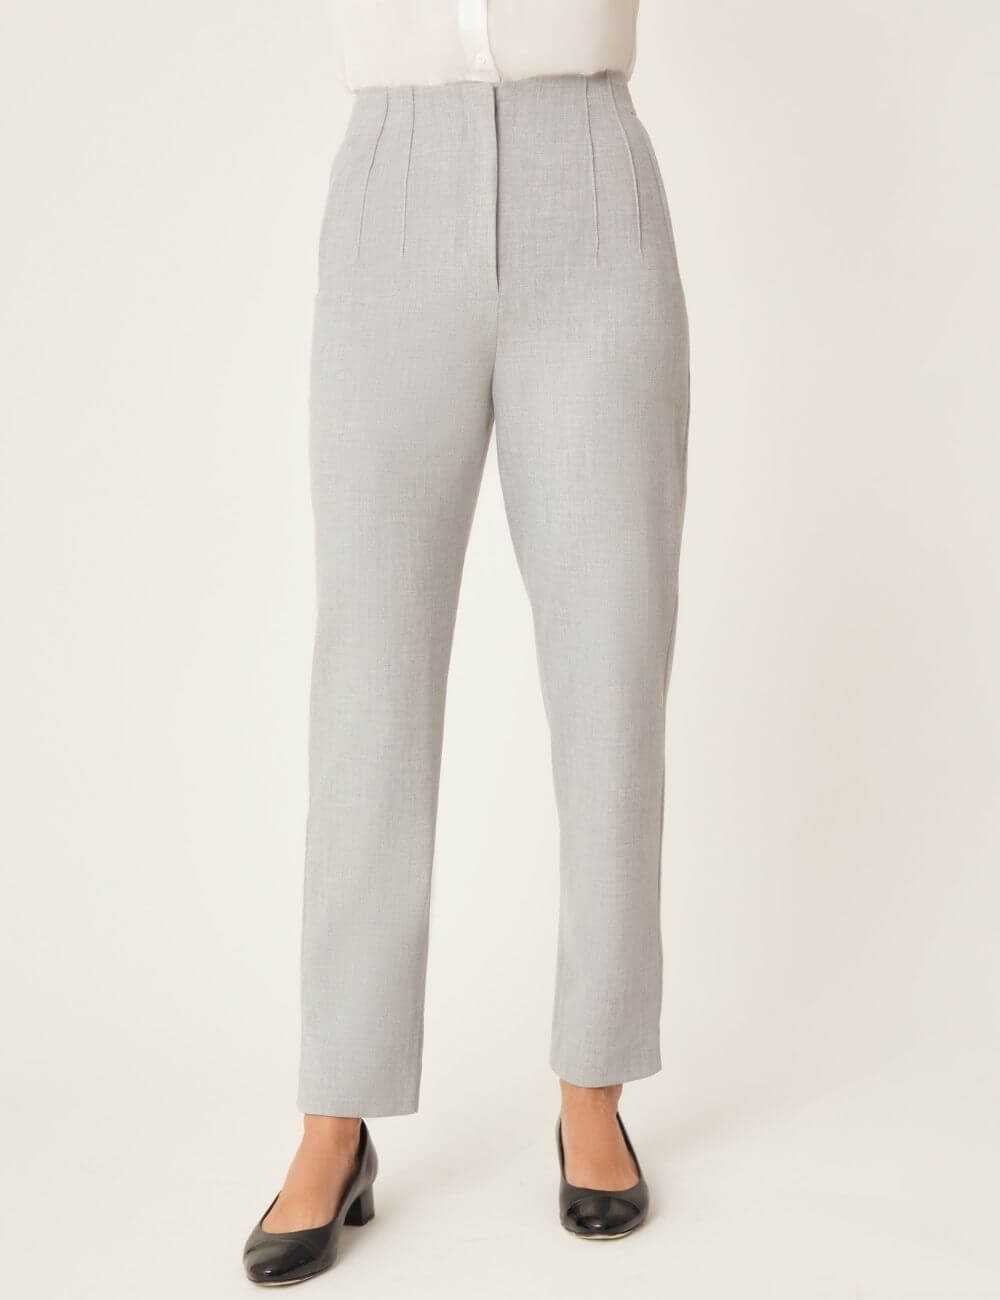 Pantalon droit gris clair avec coutures